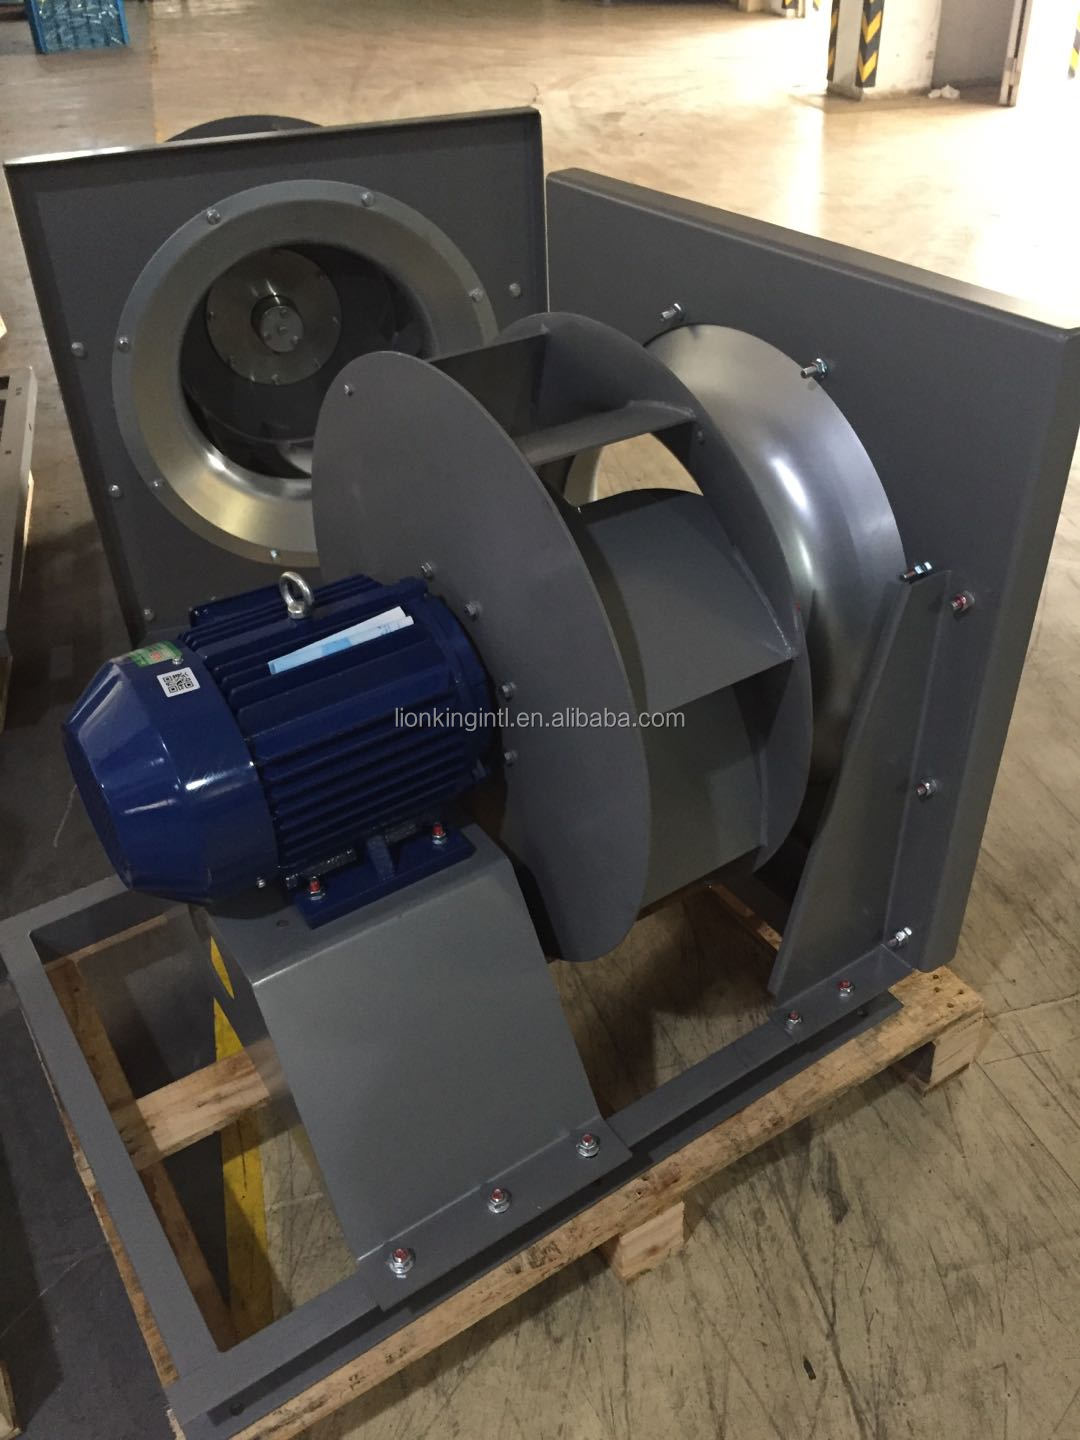 Enote za obdelavo zraka uporabljajo plenumski ventilator nazaj centrifugalni rotor